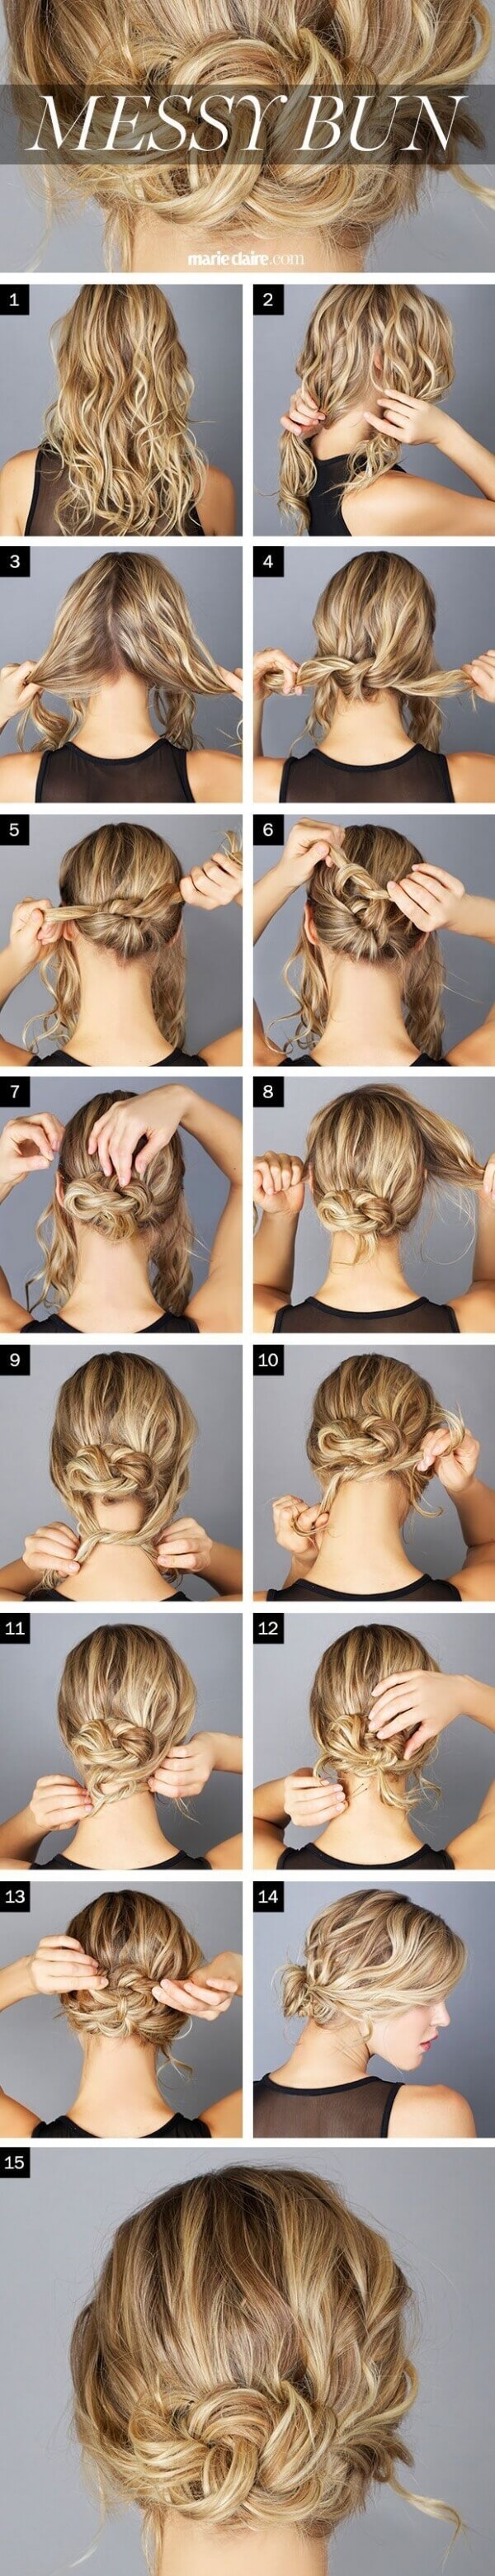 13 kiểu tóc đẹp đơn giản tiết kiệm thời gian cho mẹ 4